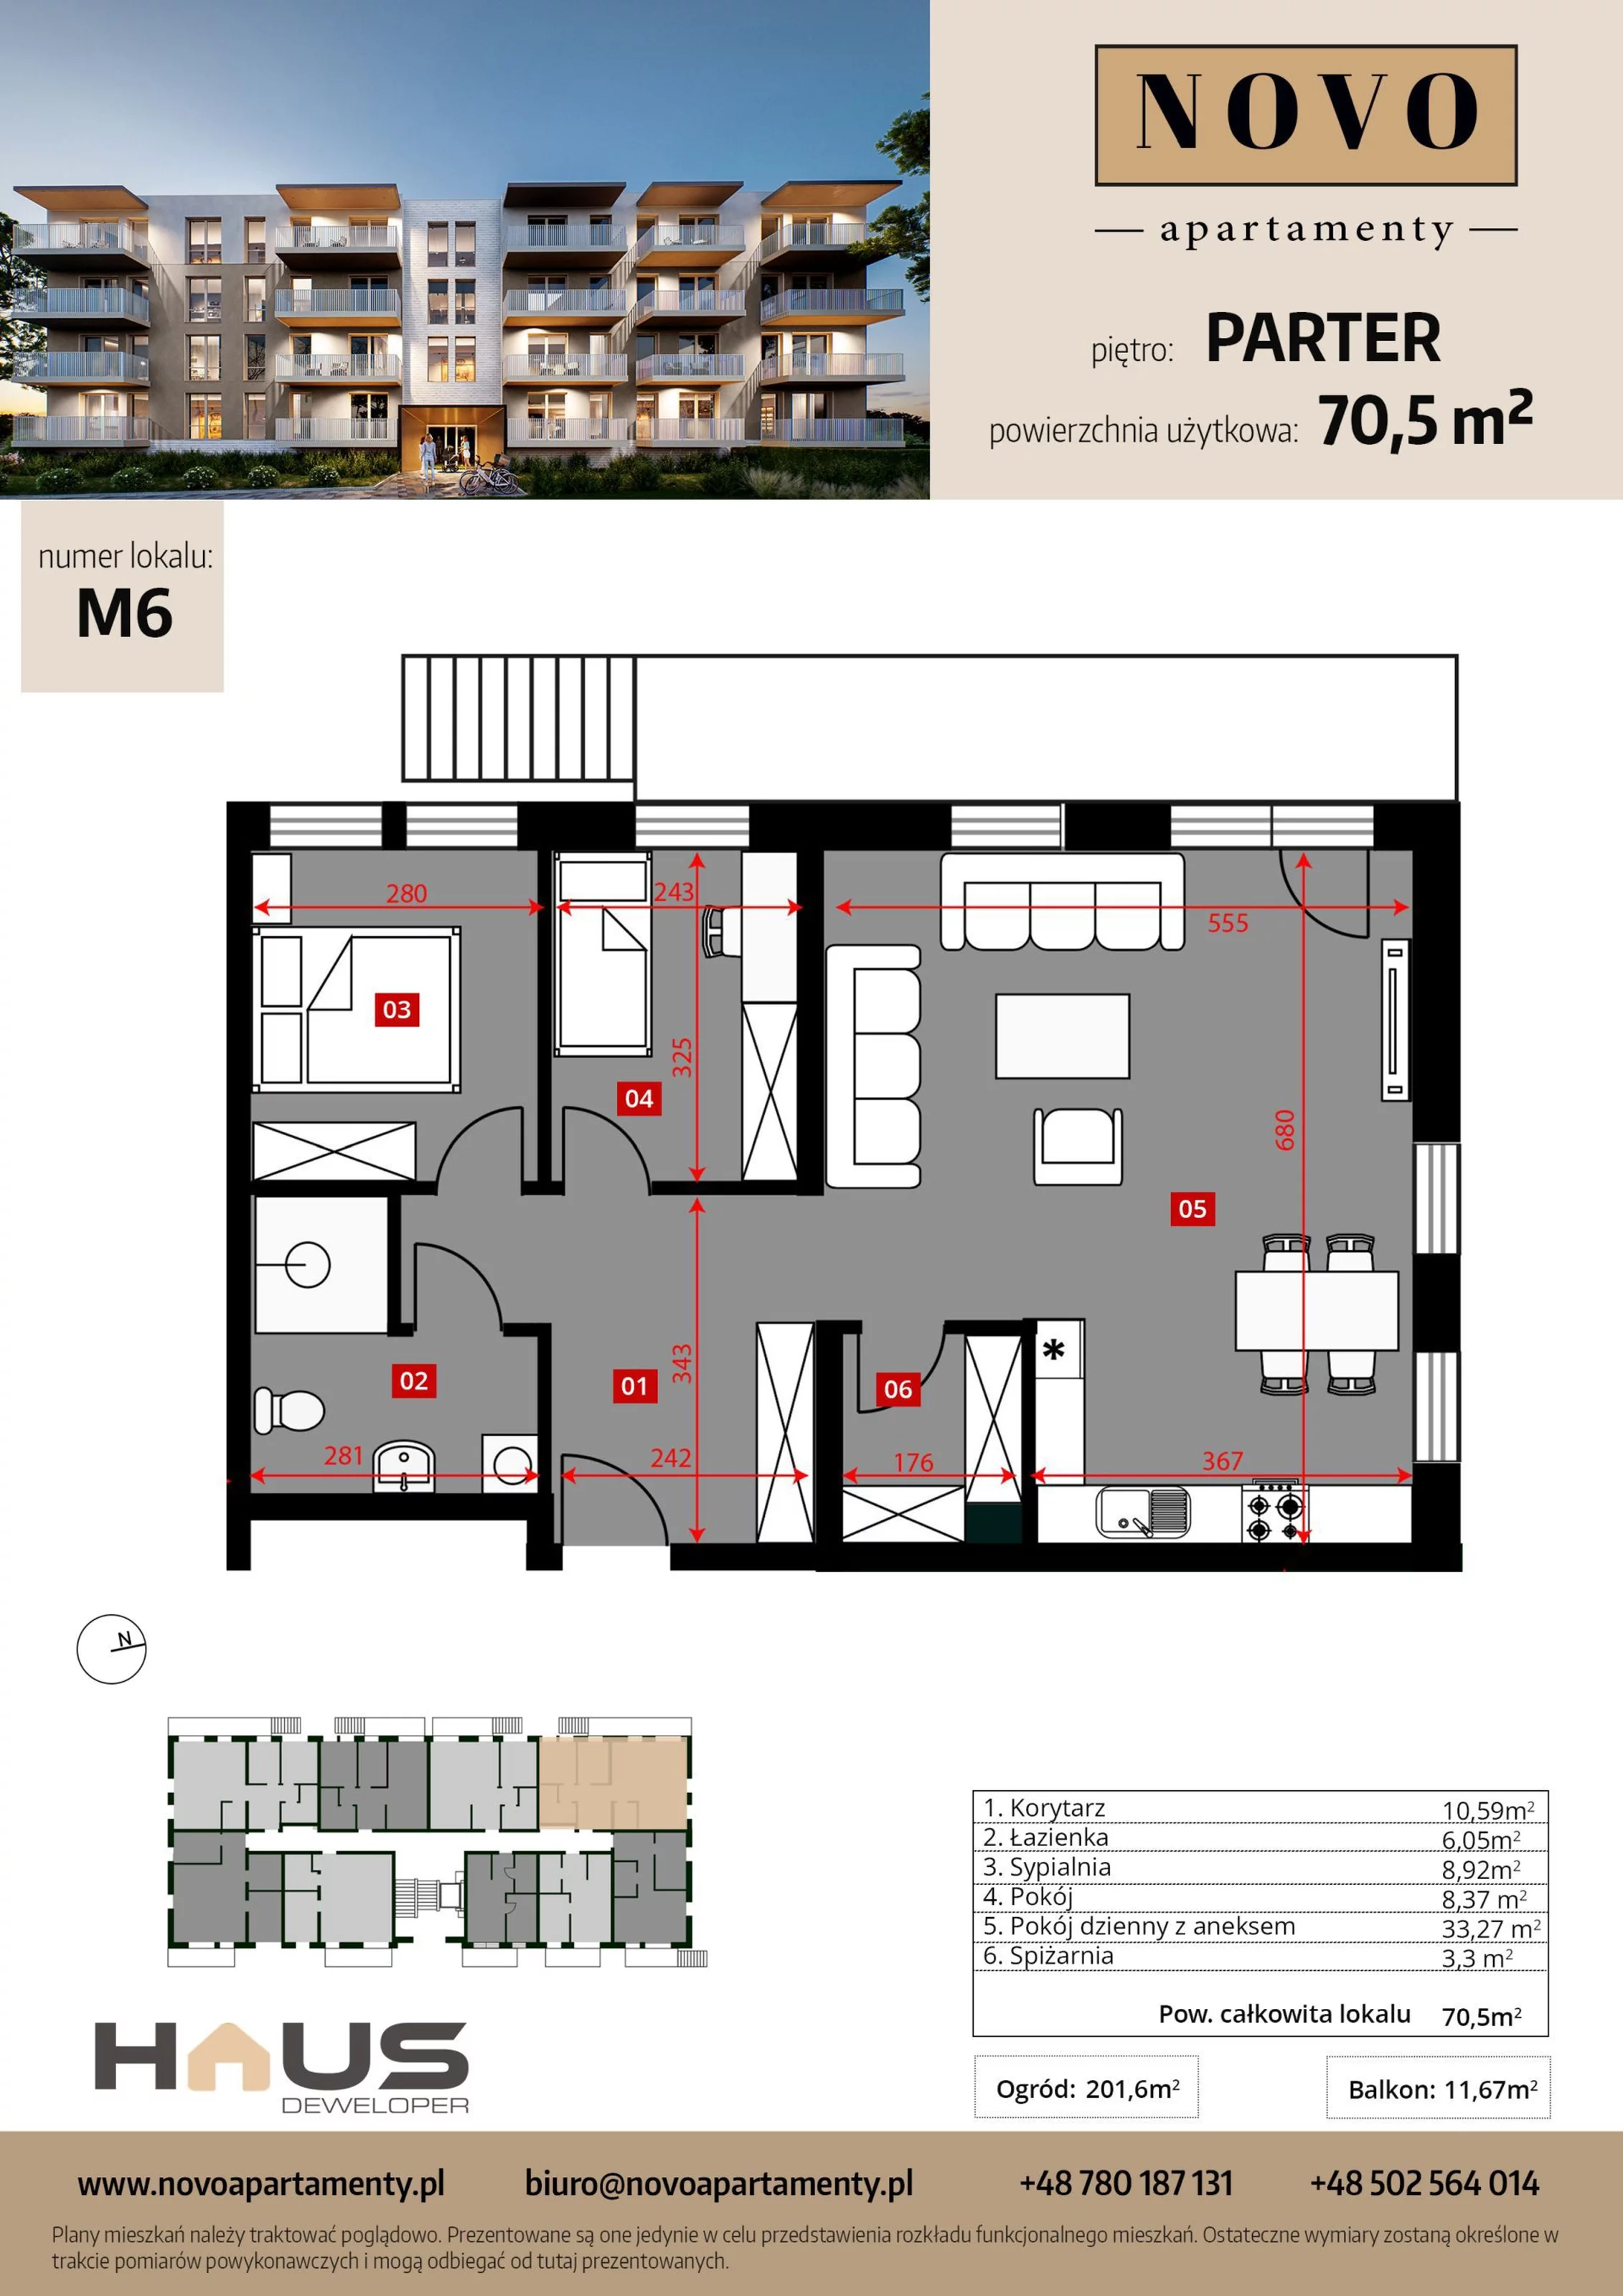 Mieszkanie 70,50 m², parter, oferta nr M6, Apartamenty NOVO, Nysa, ul. Franciszkańska